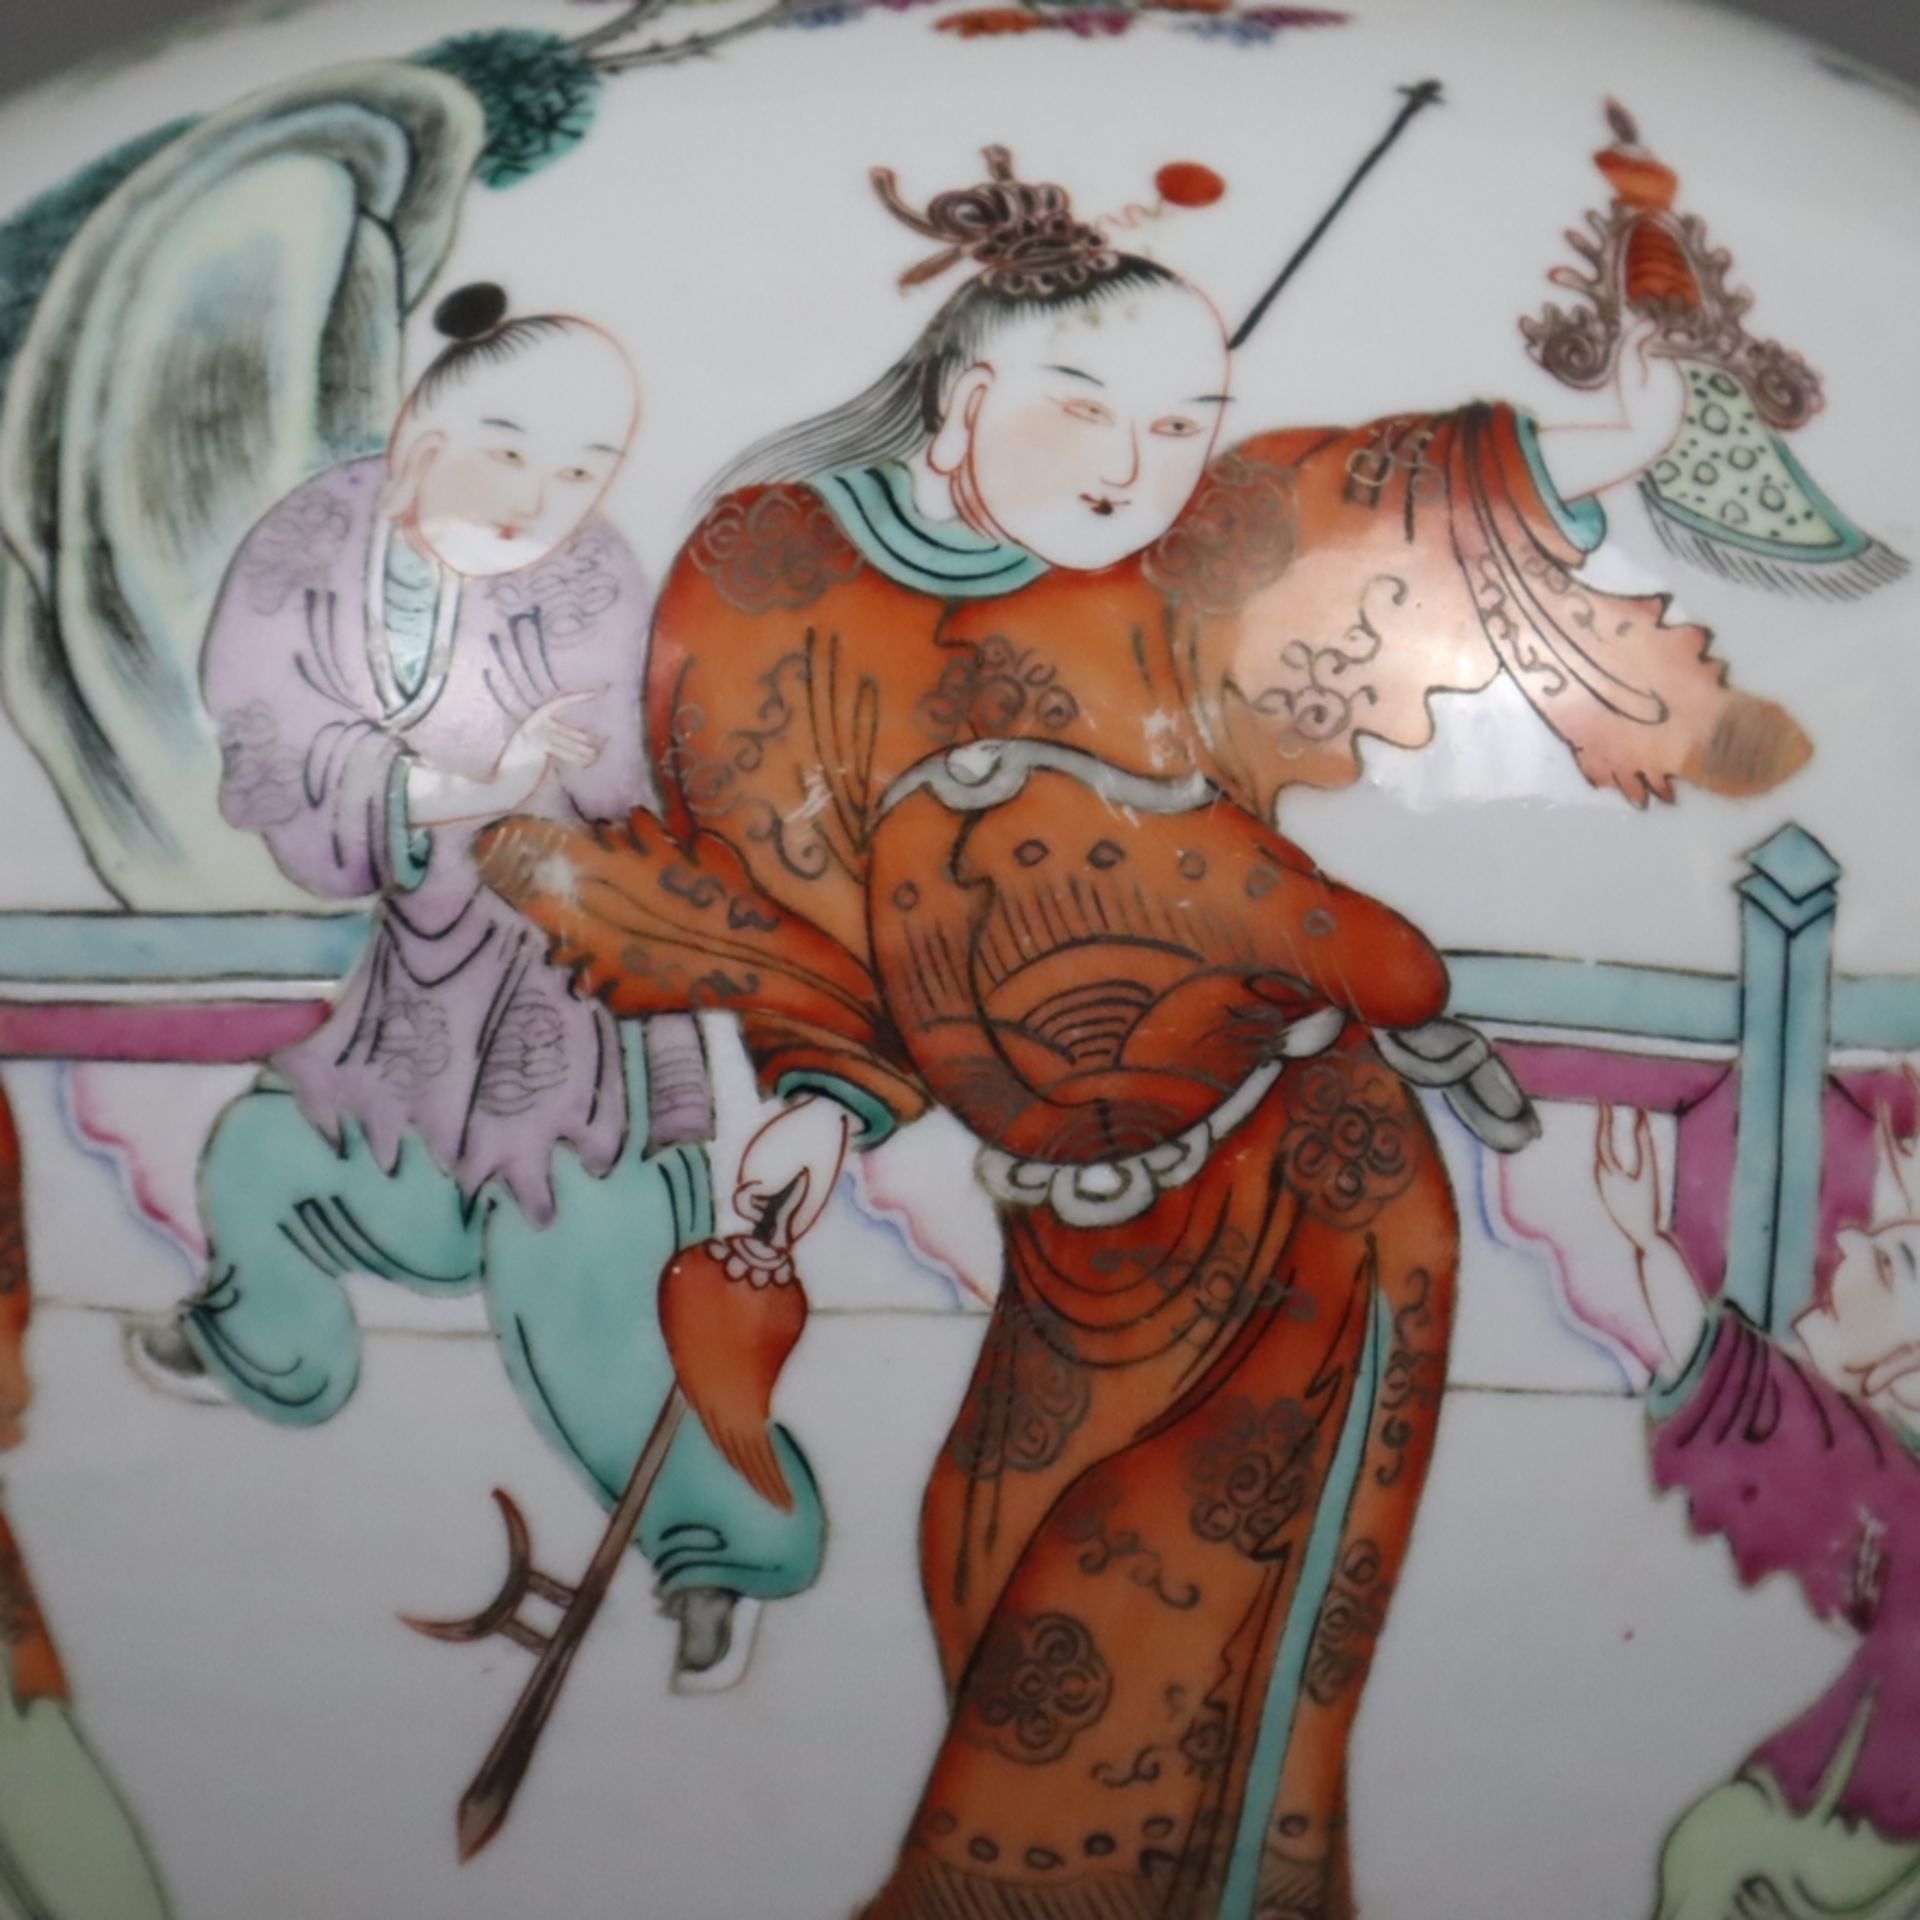 Porzellan-Deckeltopf - China, kugeliger Korpus mit Steckdeckel, auf der Wandung mehrfigurige szenis - Image 8 of 15